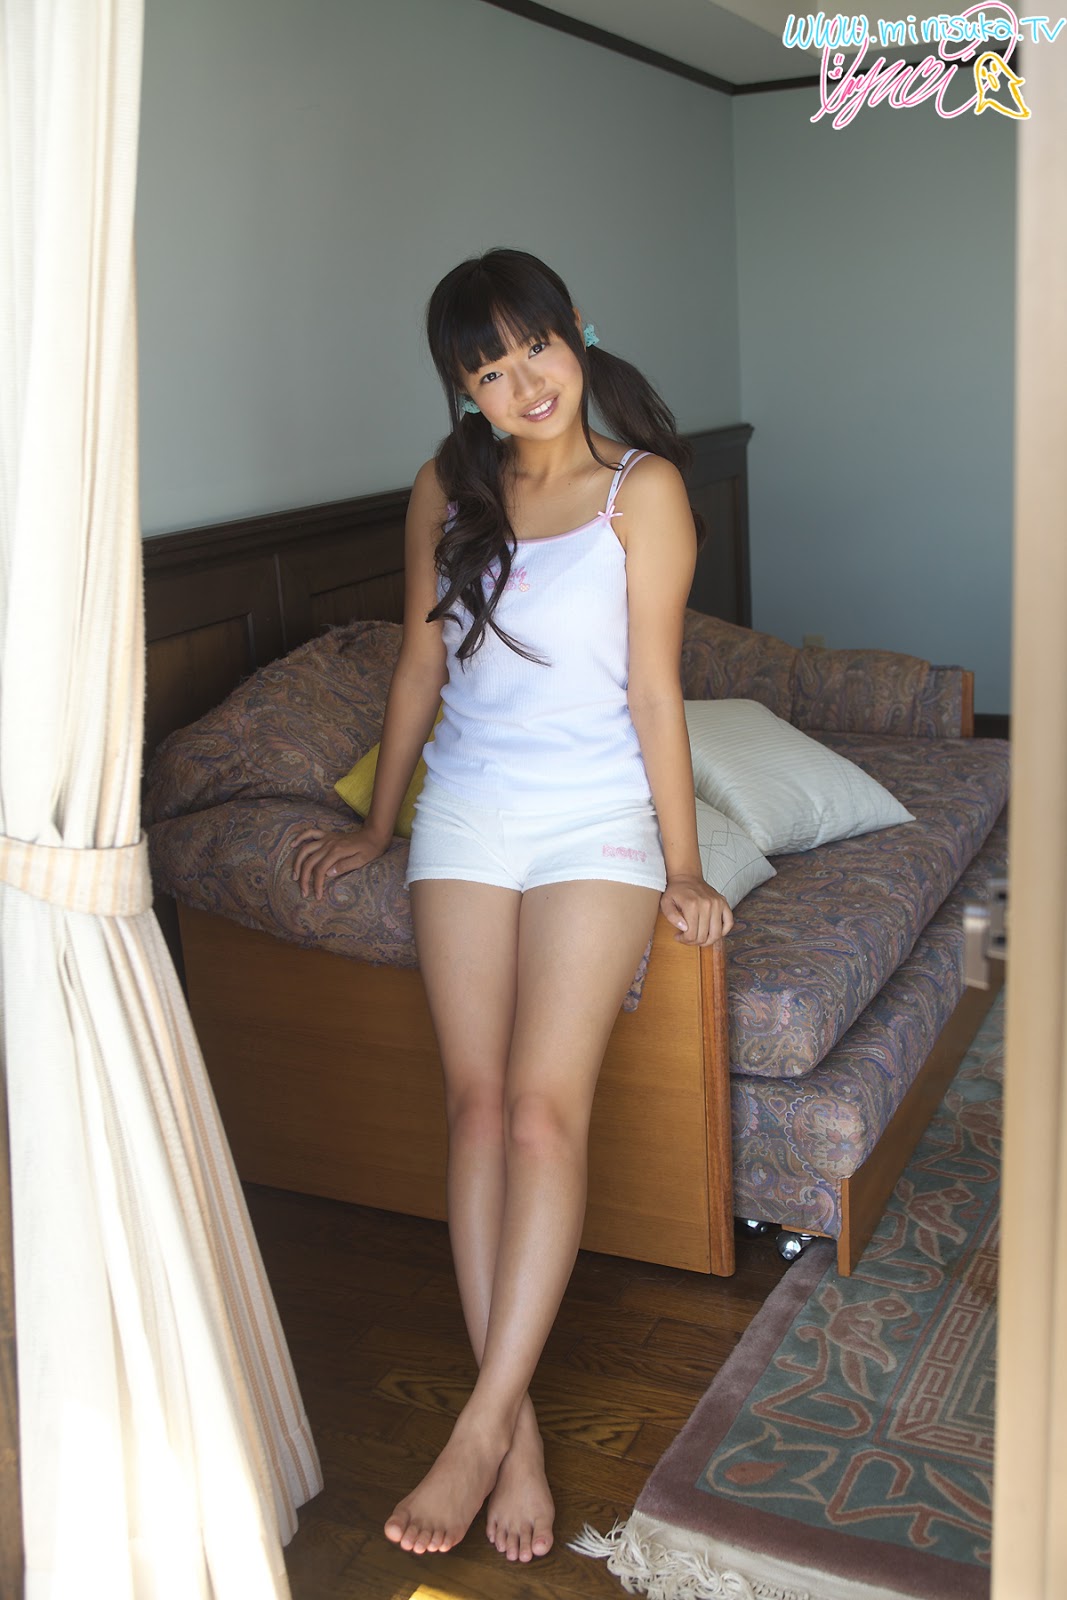 Mayumi Yamanaka Japanese Cute Idol Sexy White Sleeping Dress Fashion Photo Shoot On The Sofa